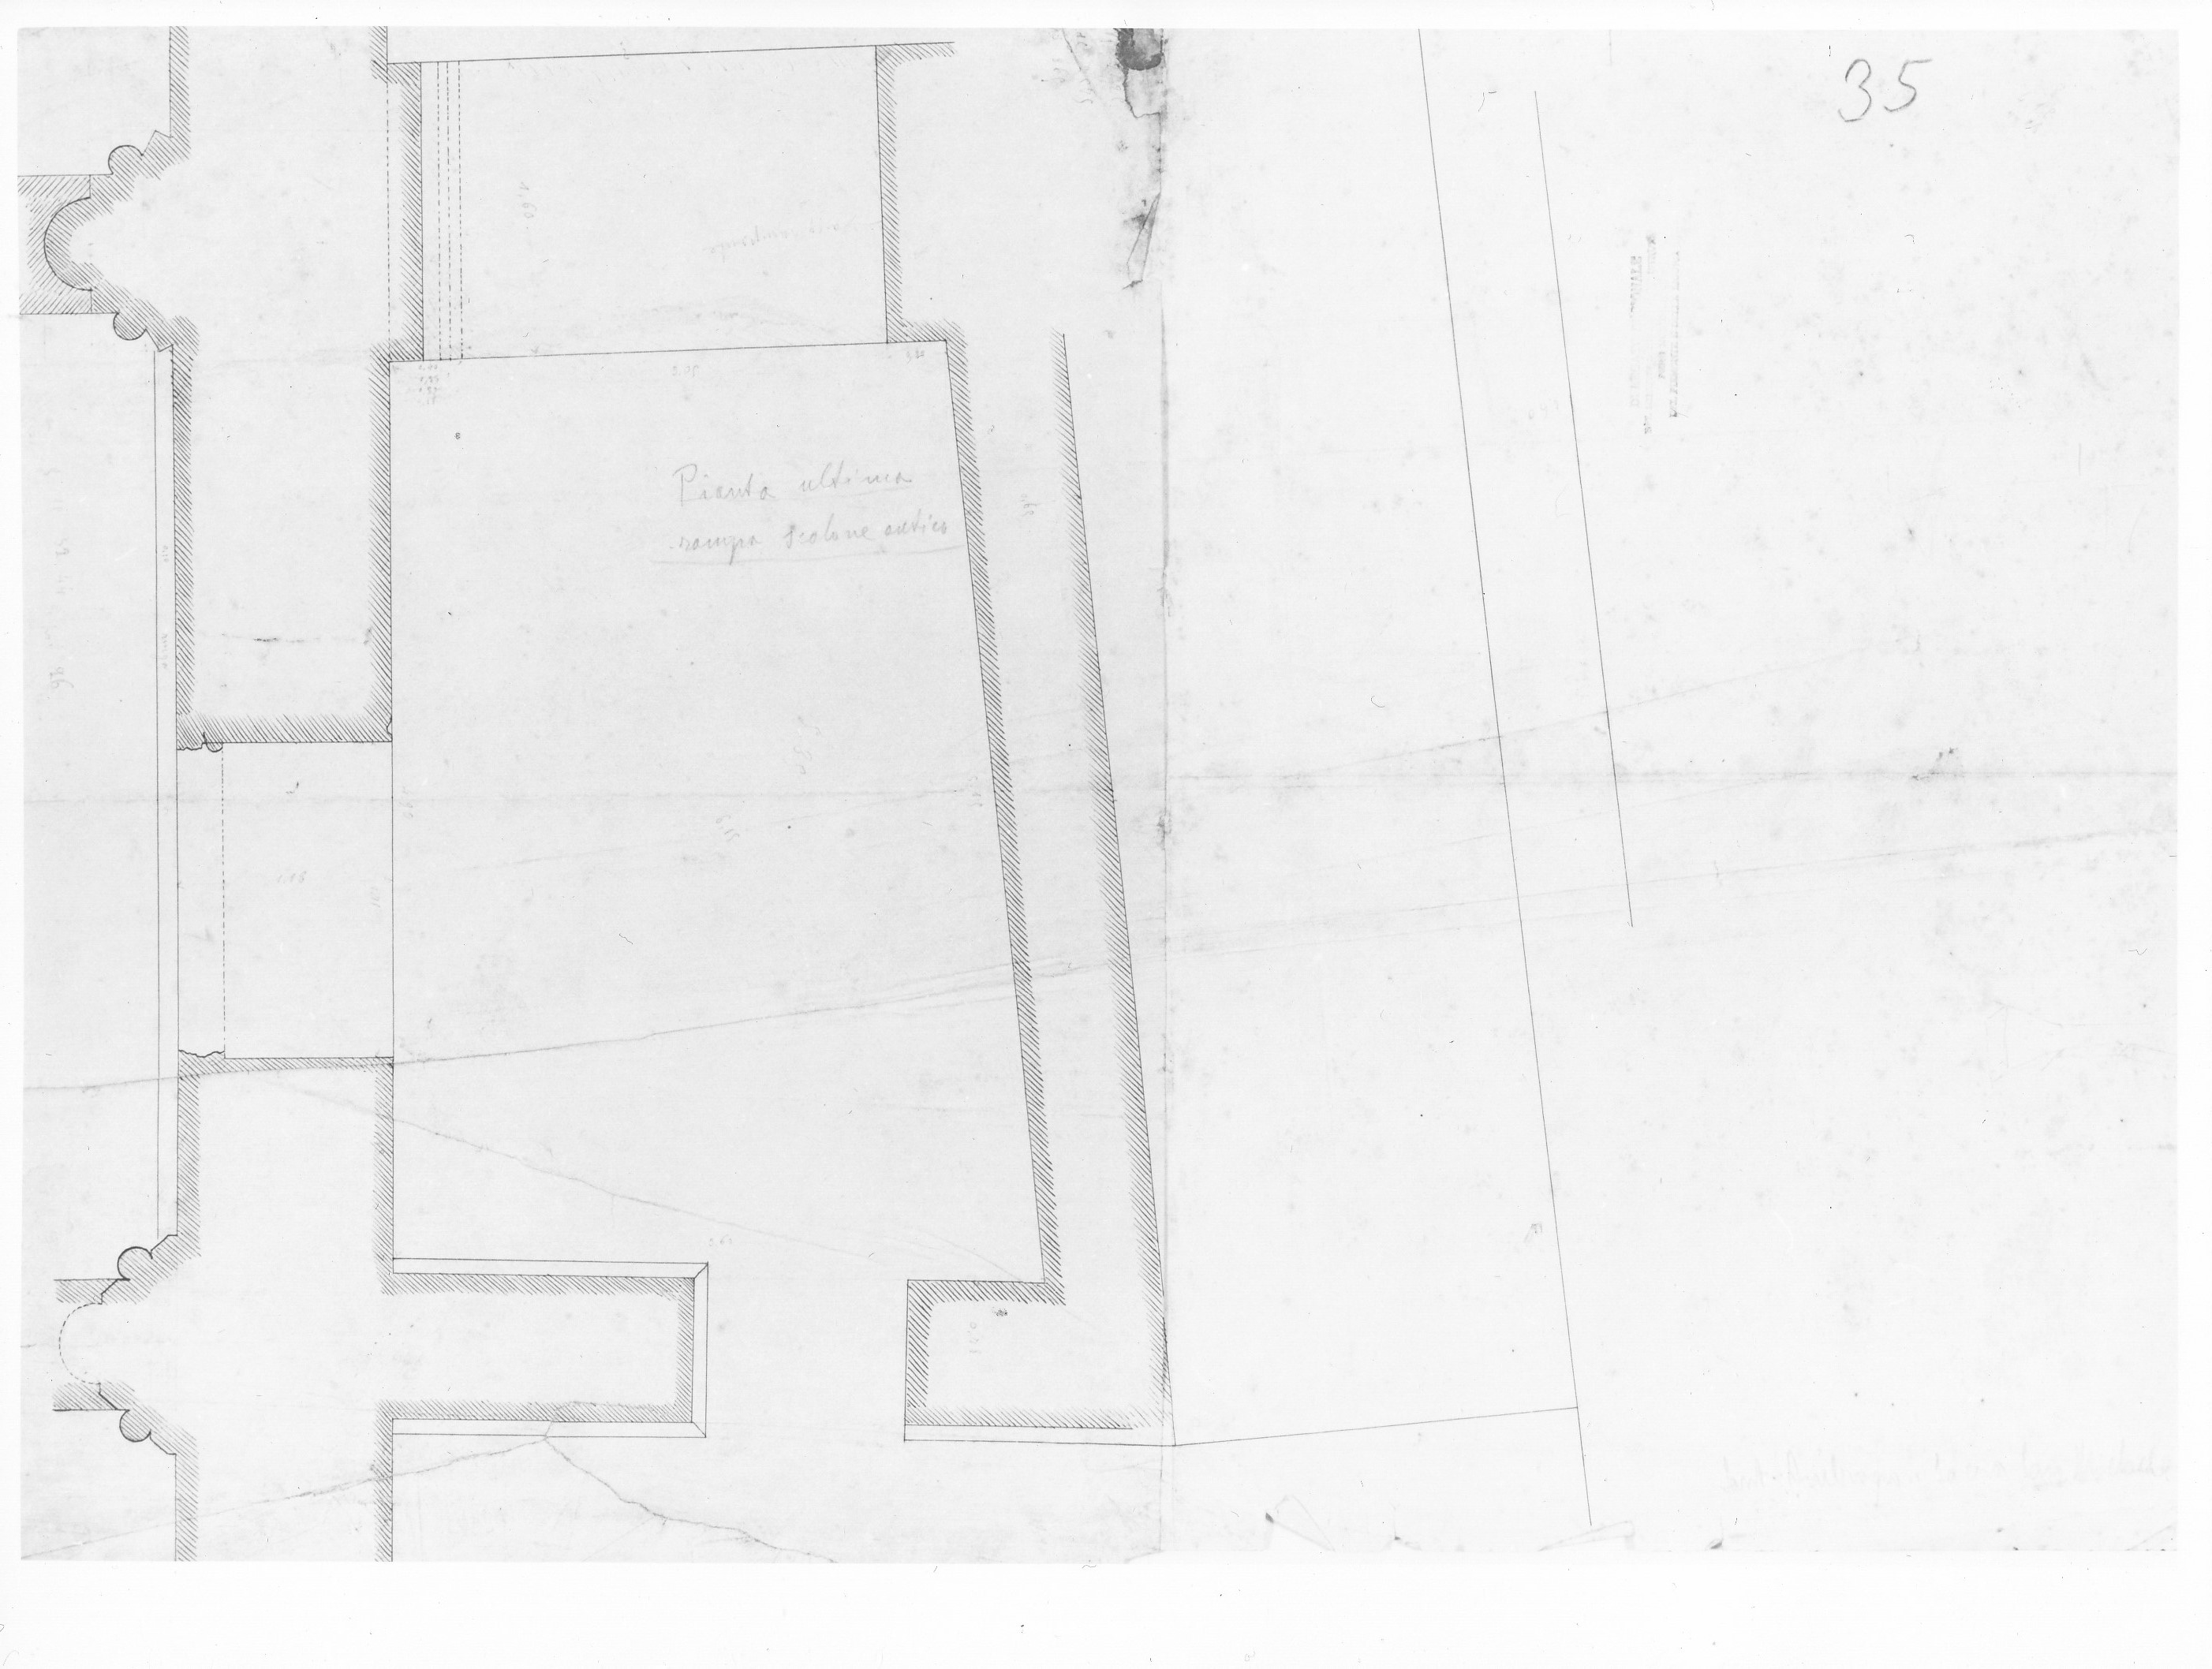 Pianta ultima rampa scalone antico, Sacra di San Michele della Chiusa a Sant'Ambrogio di Susa (TO) (disegno architettonico) - ambito piemontese (XIX)